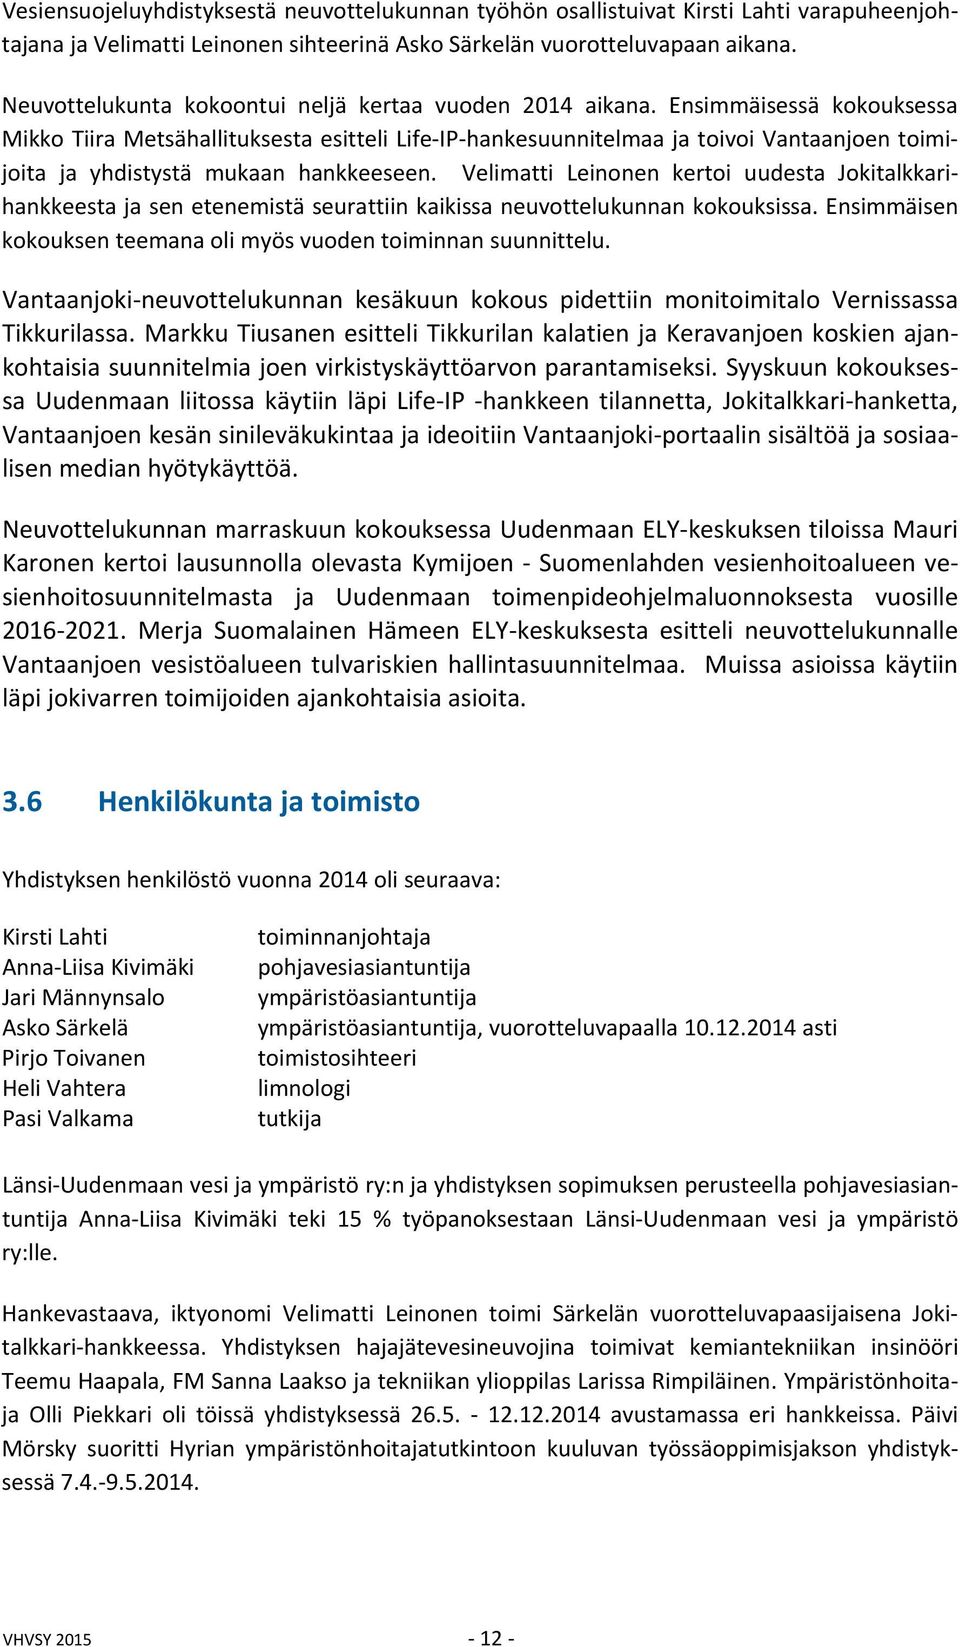 Ensimmäisessä kokouksessa Mikko Tiira Metsähallituksesta esitteli Life IP hankesuunnitelmaa ja toivoi Vantaanjoen toimijoita ja yhdistystä mukaan hankkeeseen.